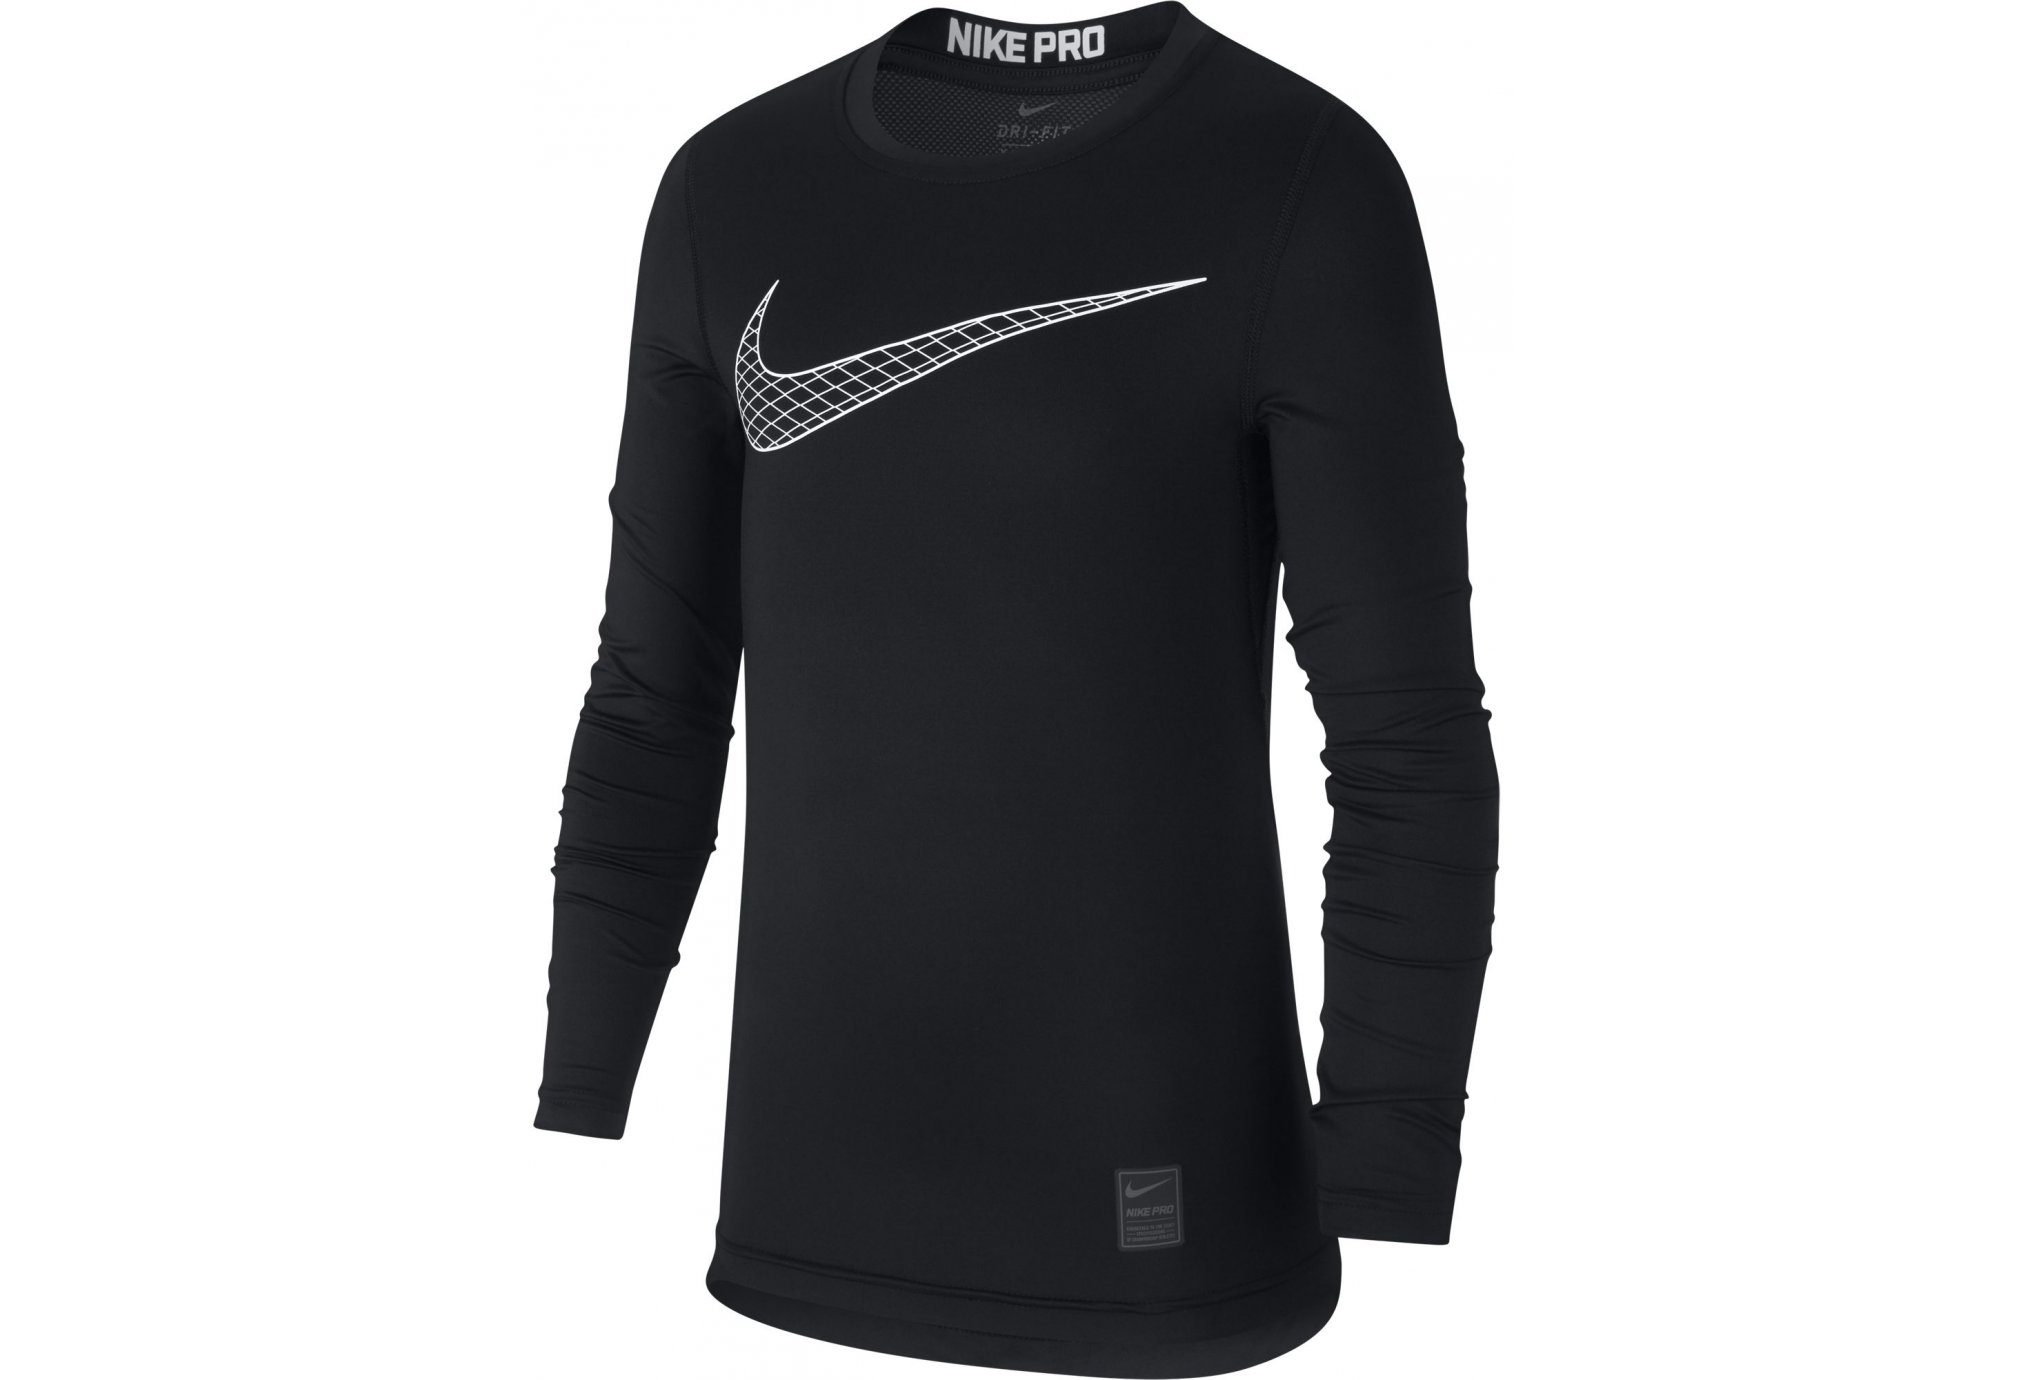 Nike Pro junior vêtement running homme